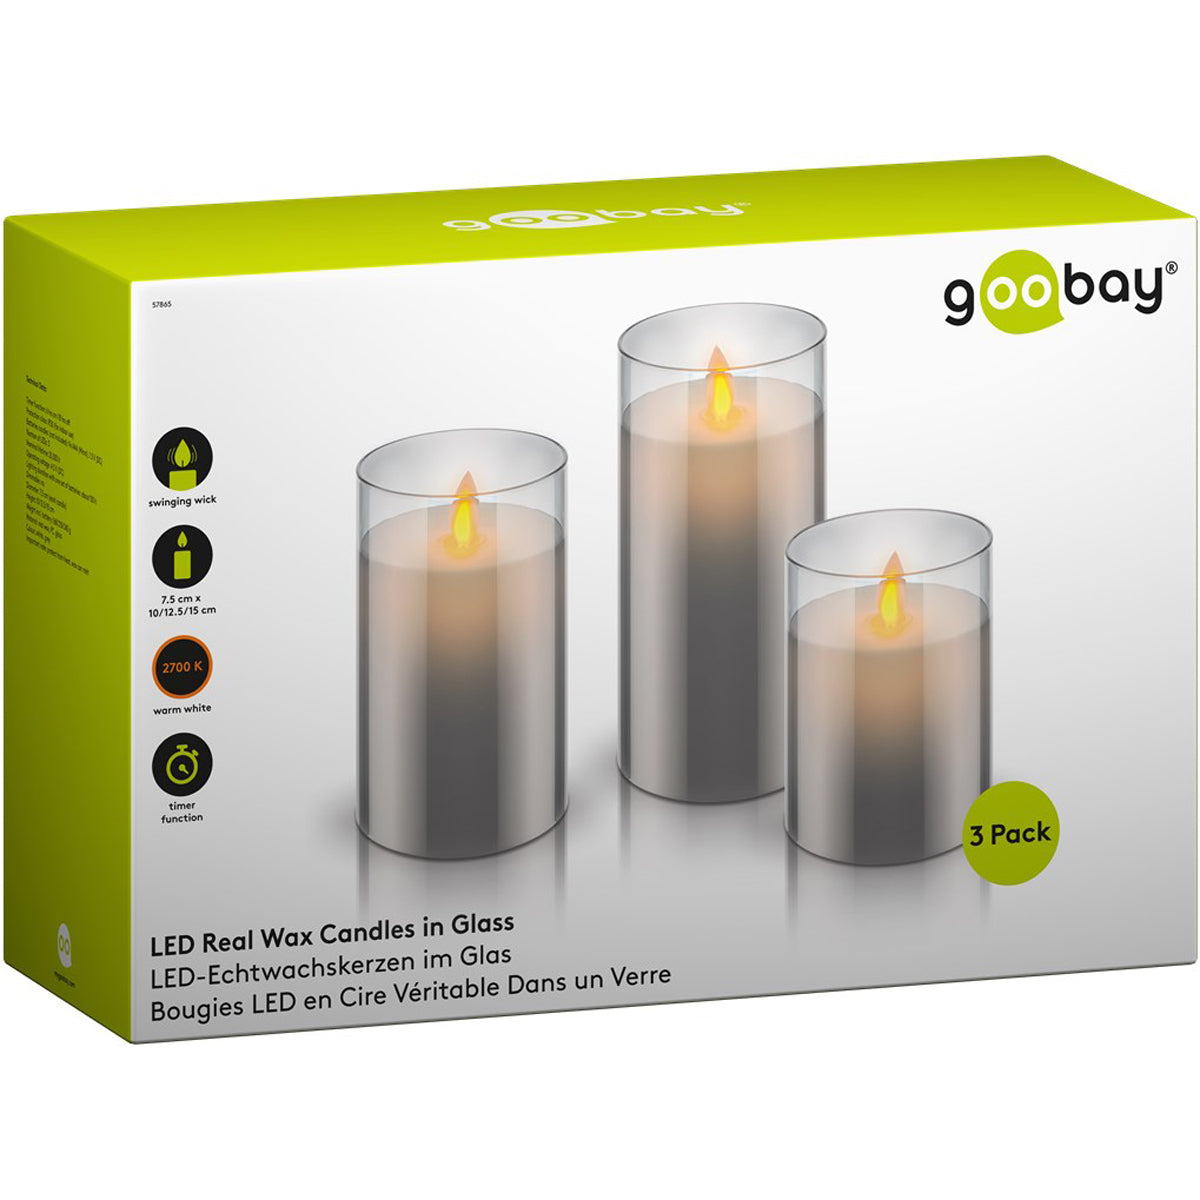 Goobay Set of 3 LED Wax Candles.